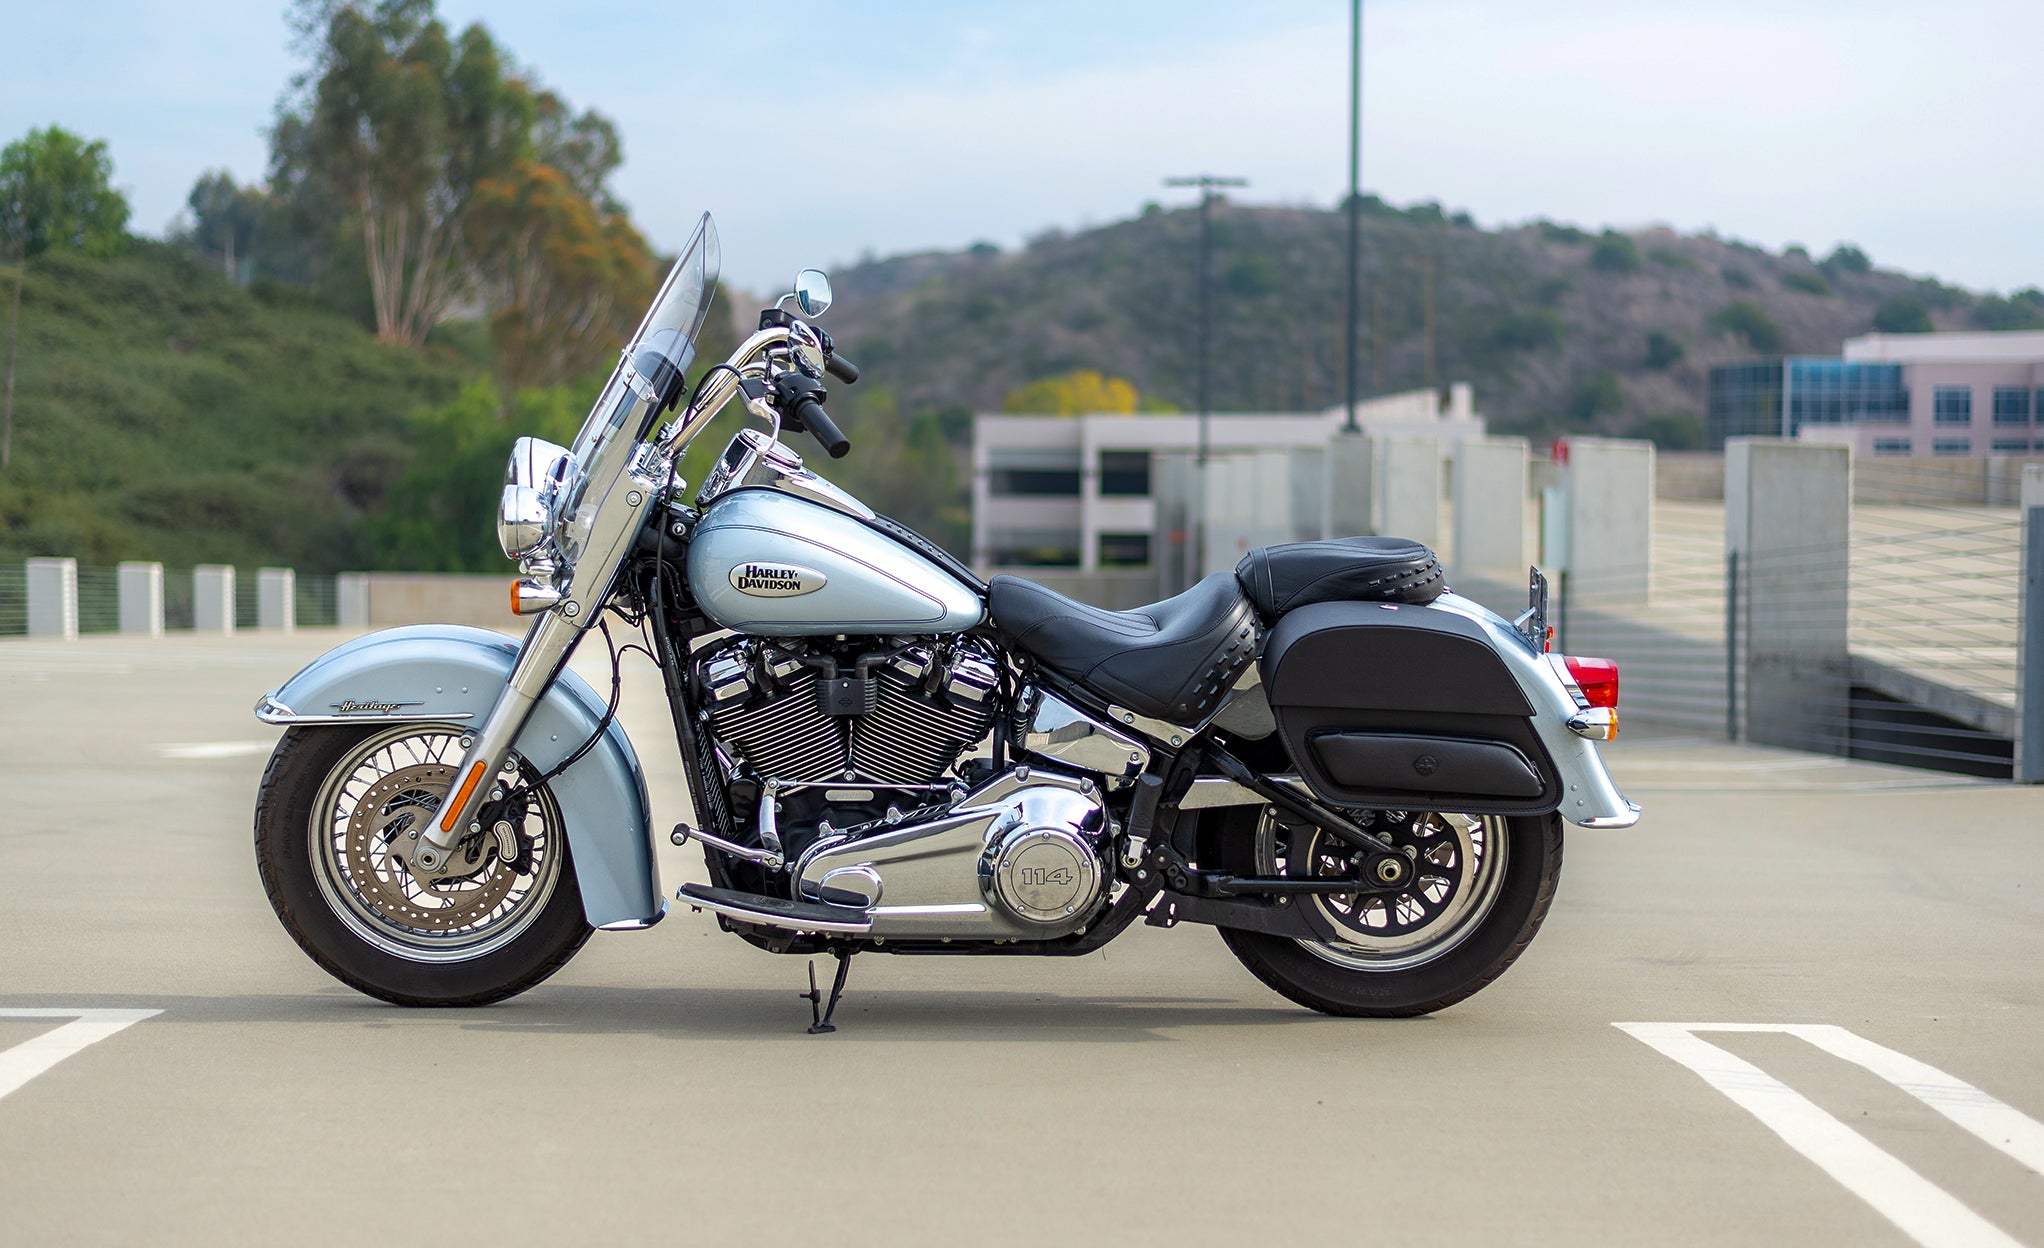 Viking Pantheon Large Motorcycle Leather Saddlebags For Harley Davidson Softail Heritage Flst I C Ci @expand